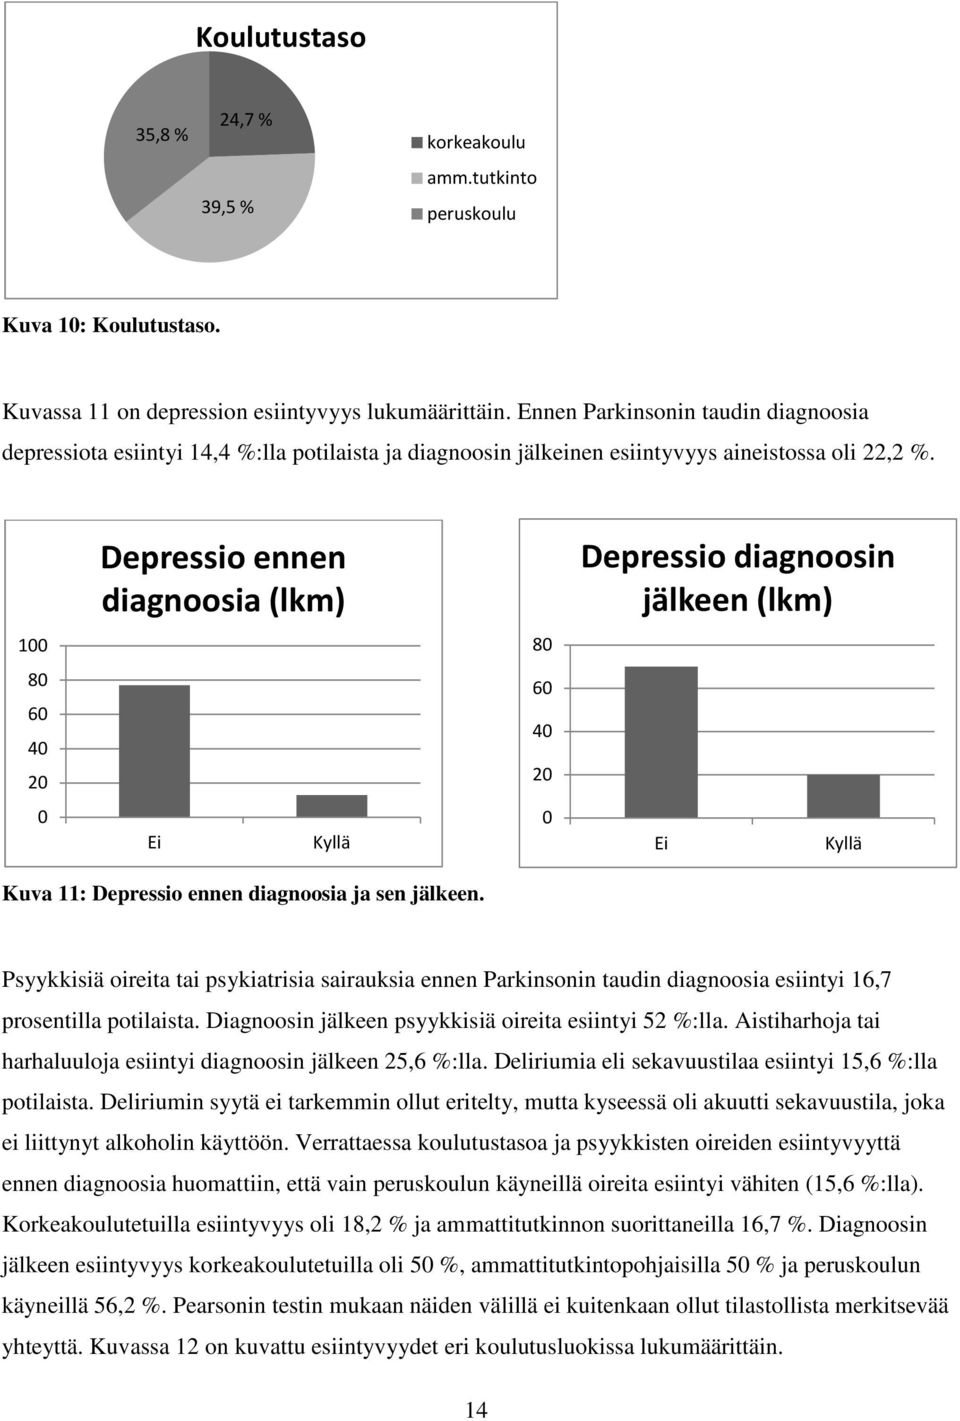 Depressio ennen diagnoosia (lkm) Depressio diagnoosin jälkeen (lkm) 100 80 80 60 40 20 60 40 20 0 Ei Kyllä 0 Ei Kyllä Kuva 11: Depressio ennen diagnoosia ja sen jälkeen.